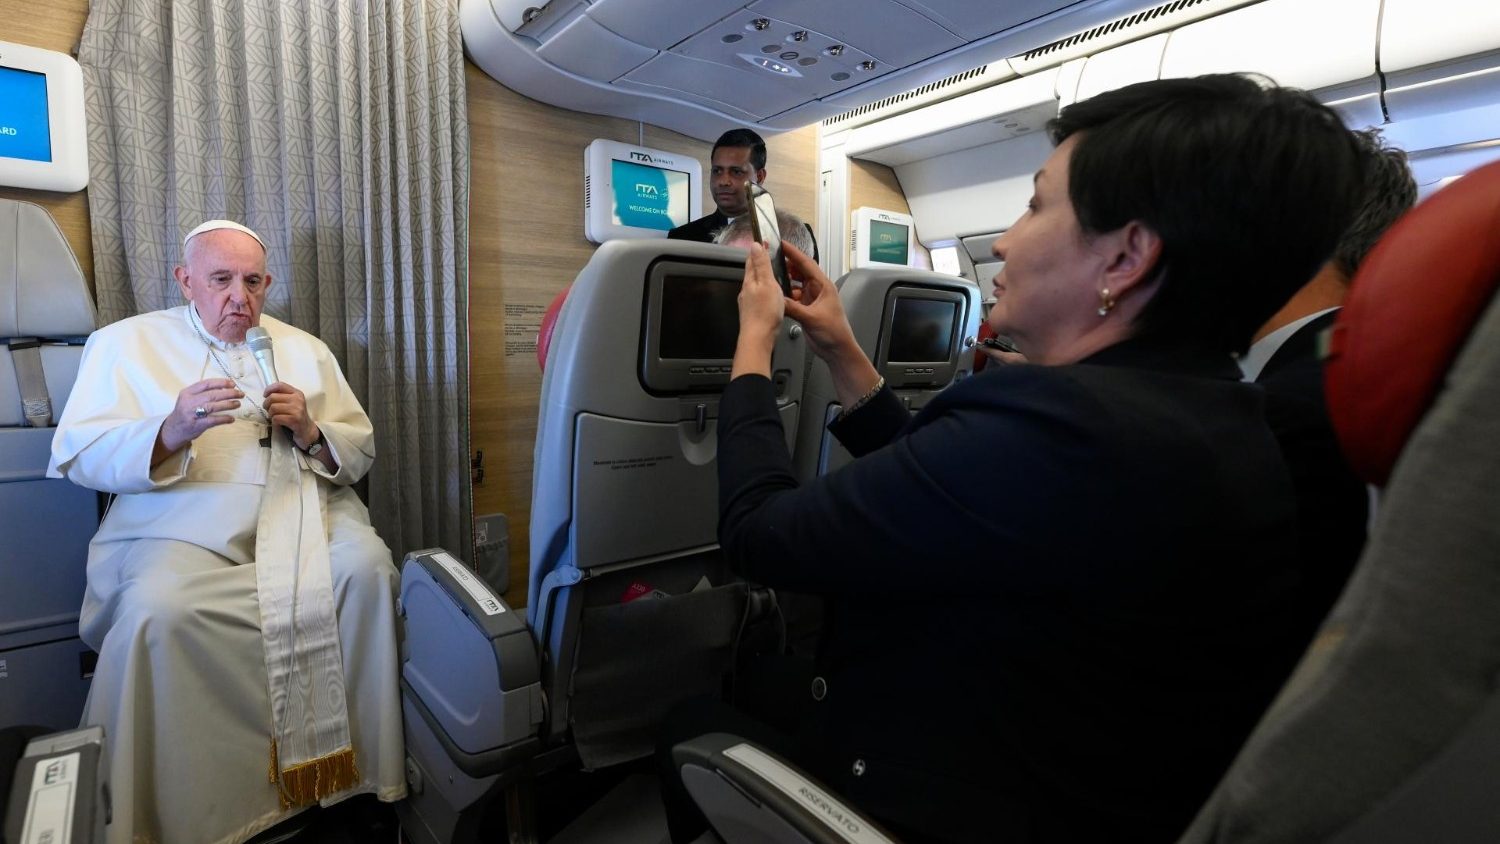 Папа на пресс-конференции в самолете: чтобы понять Китай, мы избрали путь диалога